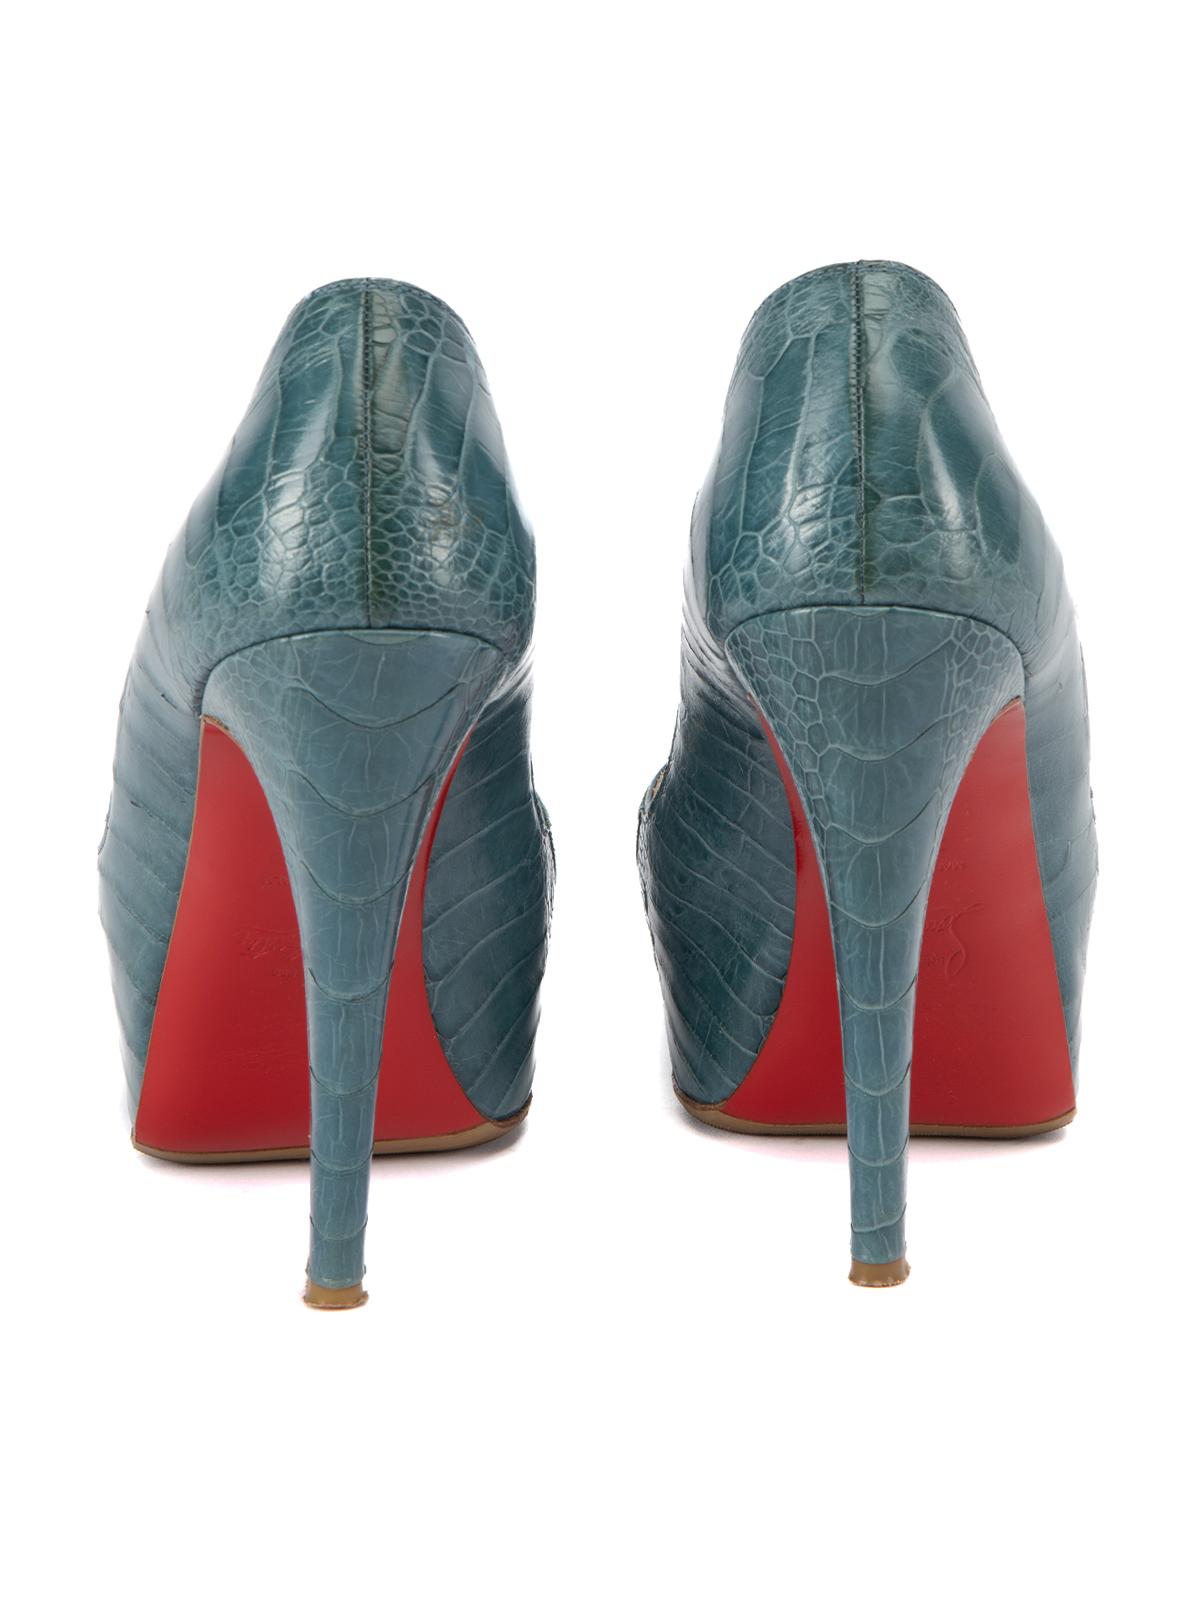 Pre-Loved Christian Louboutin Women's Snakeskin Peep Toe Heels 1